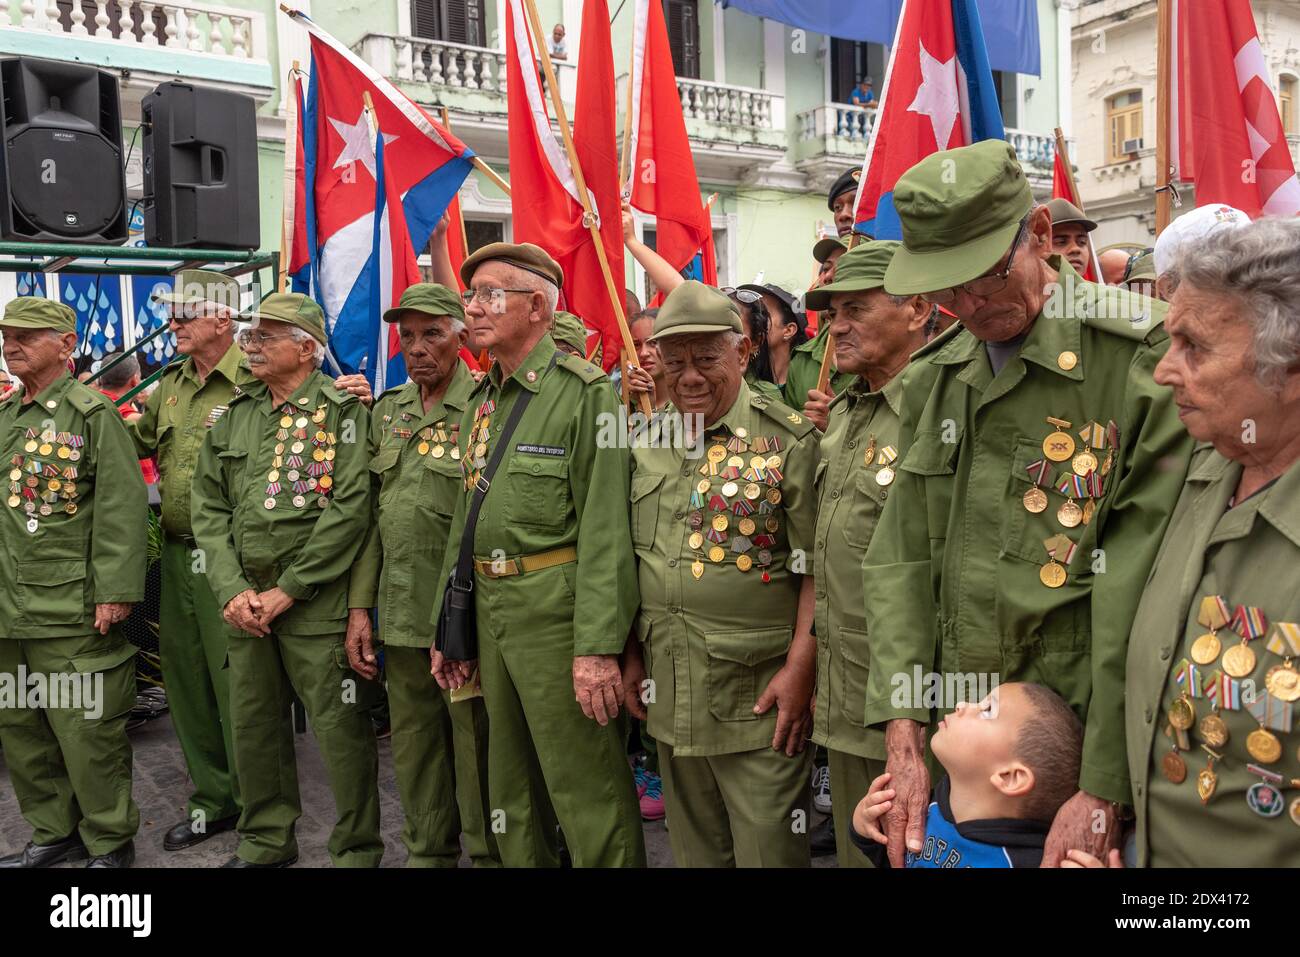 Kubanische Helden während der 'Caravana de la Victoria', Santa Clara, Kuba-6. Januar 2019 Stockfoto